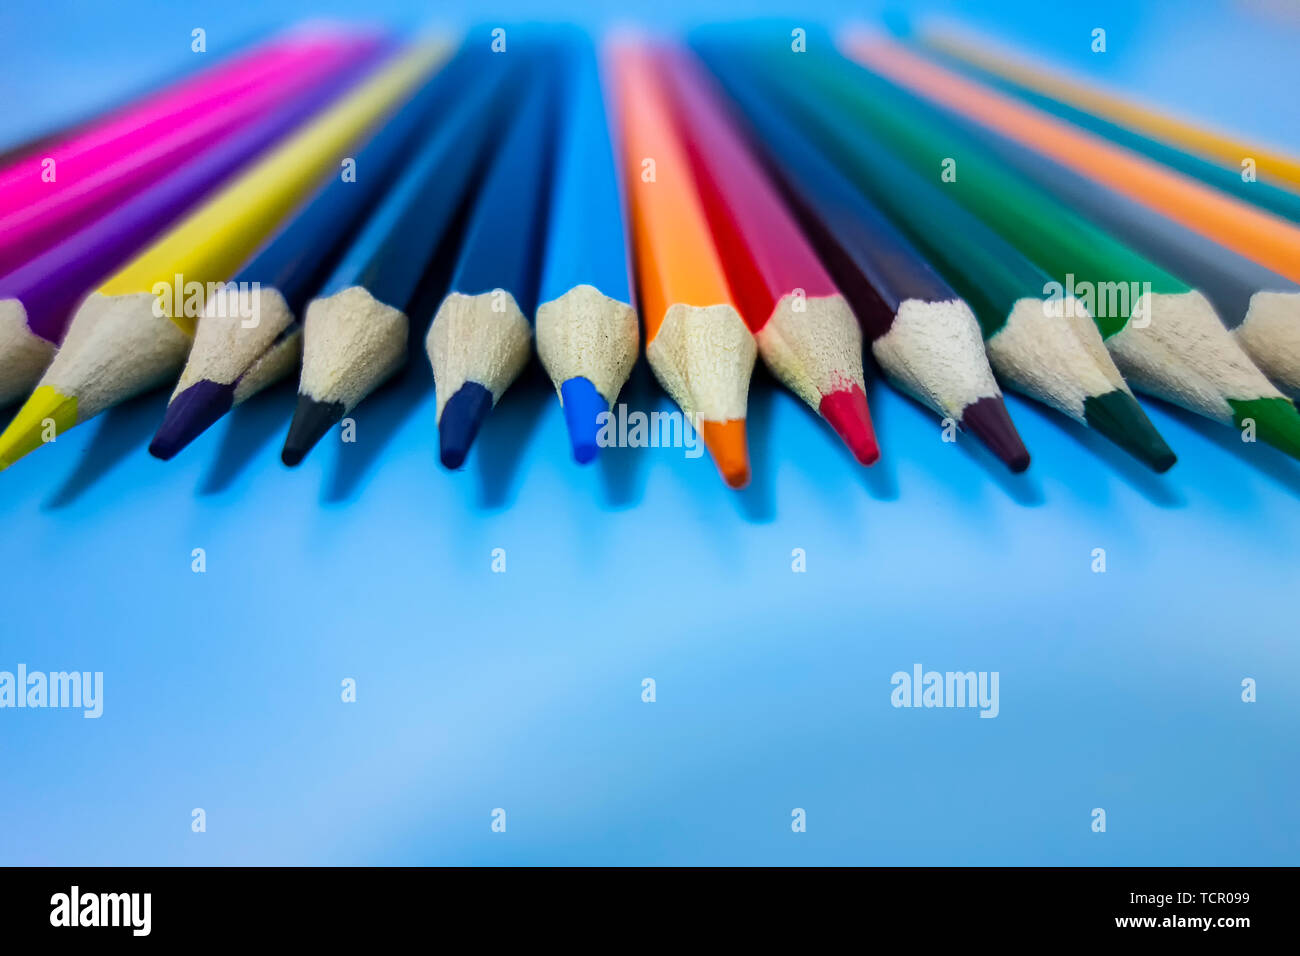 Un crayon de couleur sont soigneusement disposées dans un fond bleu Banque D'Images